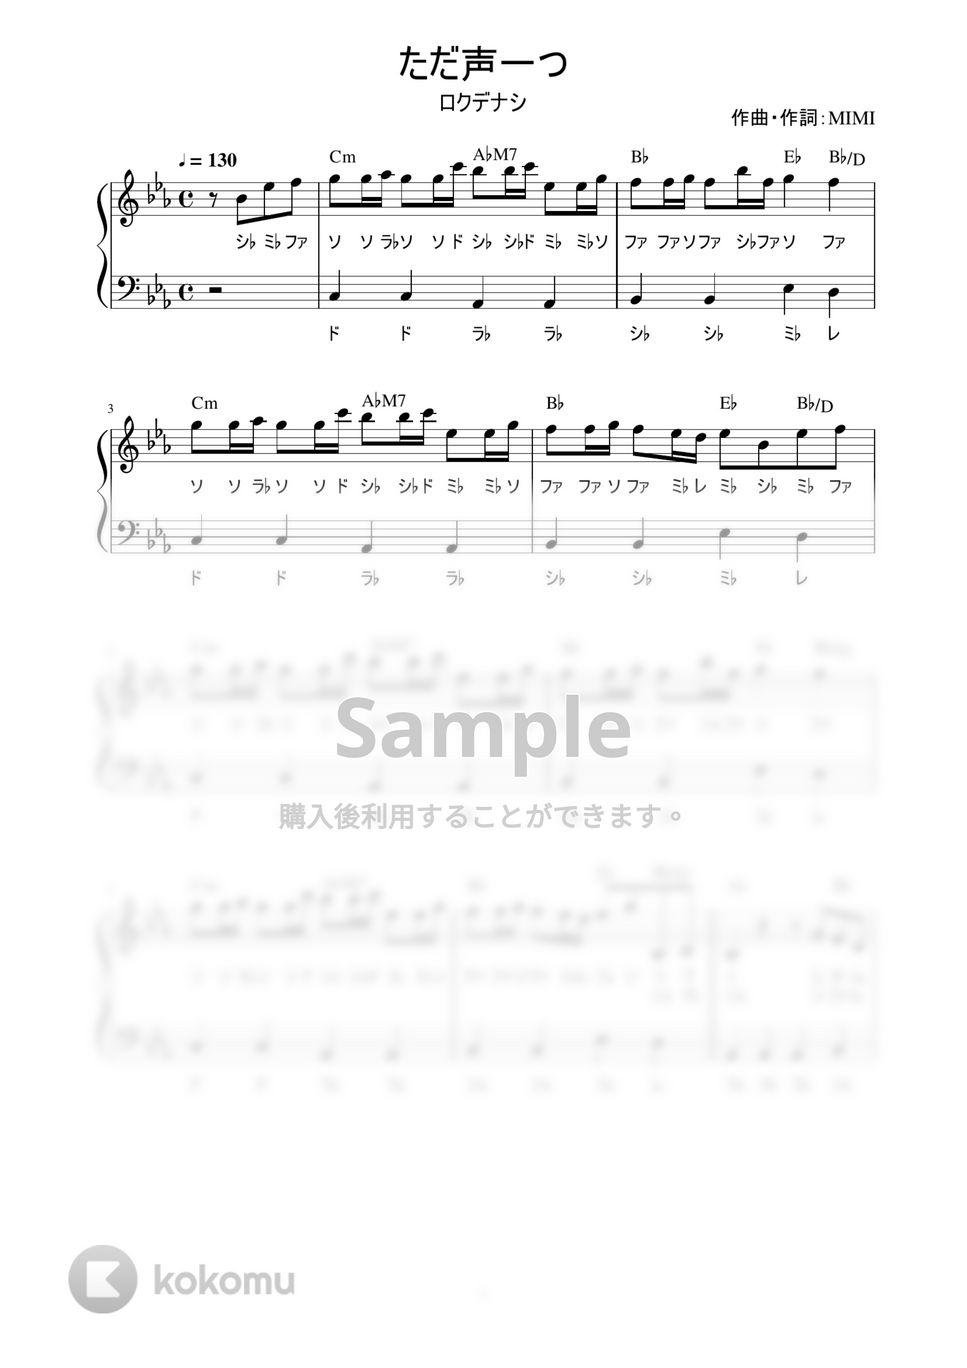 ロクデナシ - ただ声一つ (かんたん / 歌詞付き / ドレミ付き / 初心者) by piano.tokyo